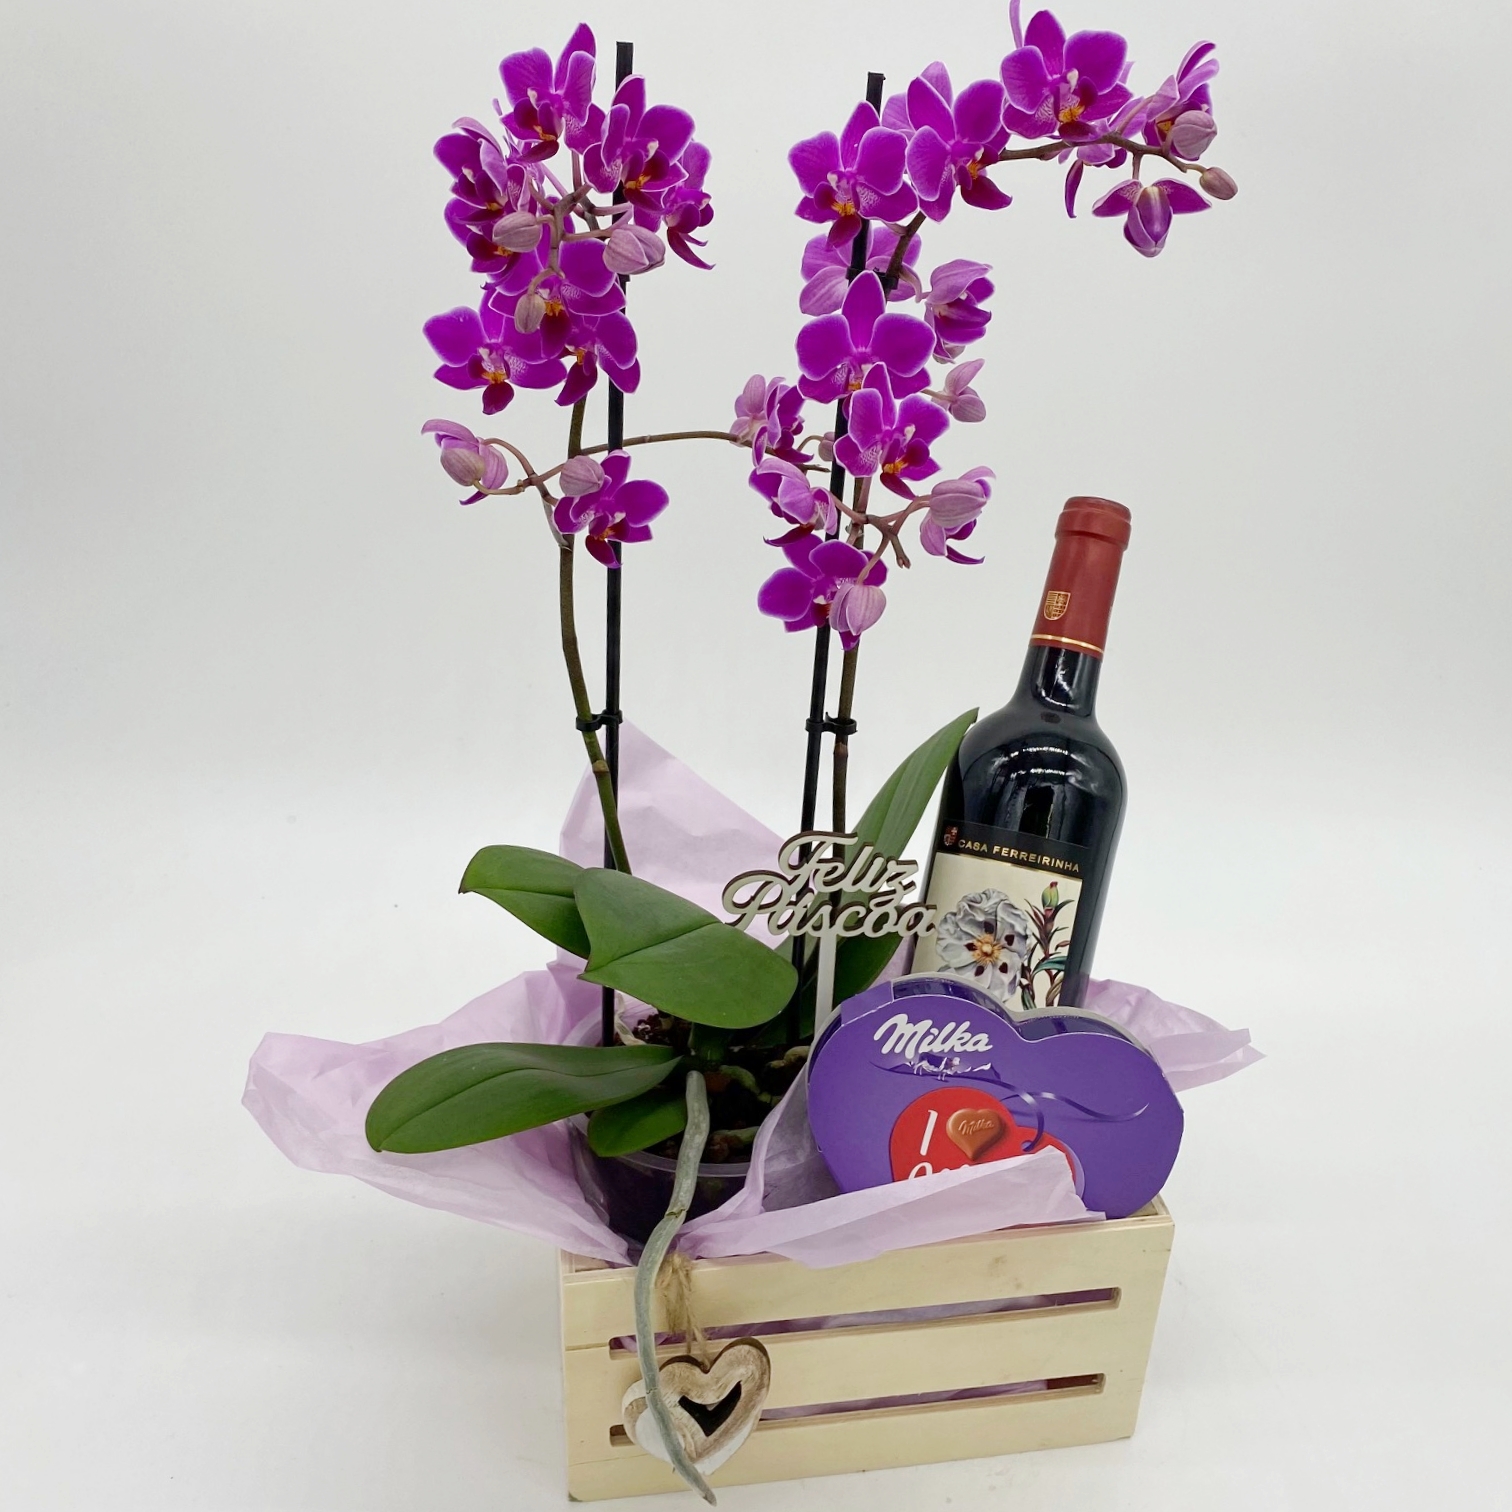 Caixa com vinho, orquídea e chocolate para a Páscoa